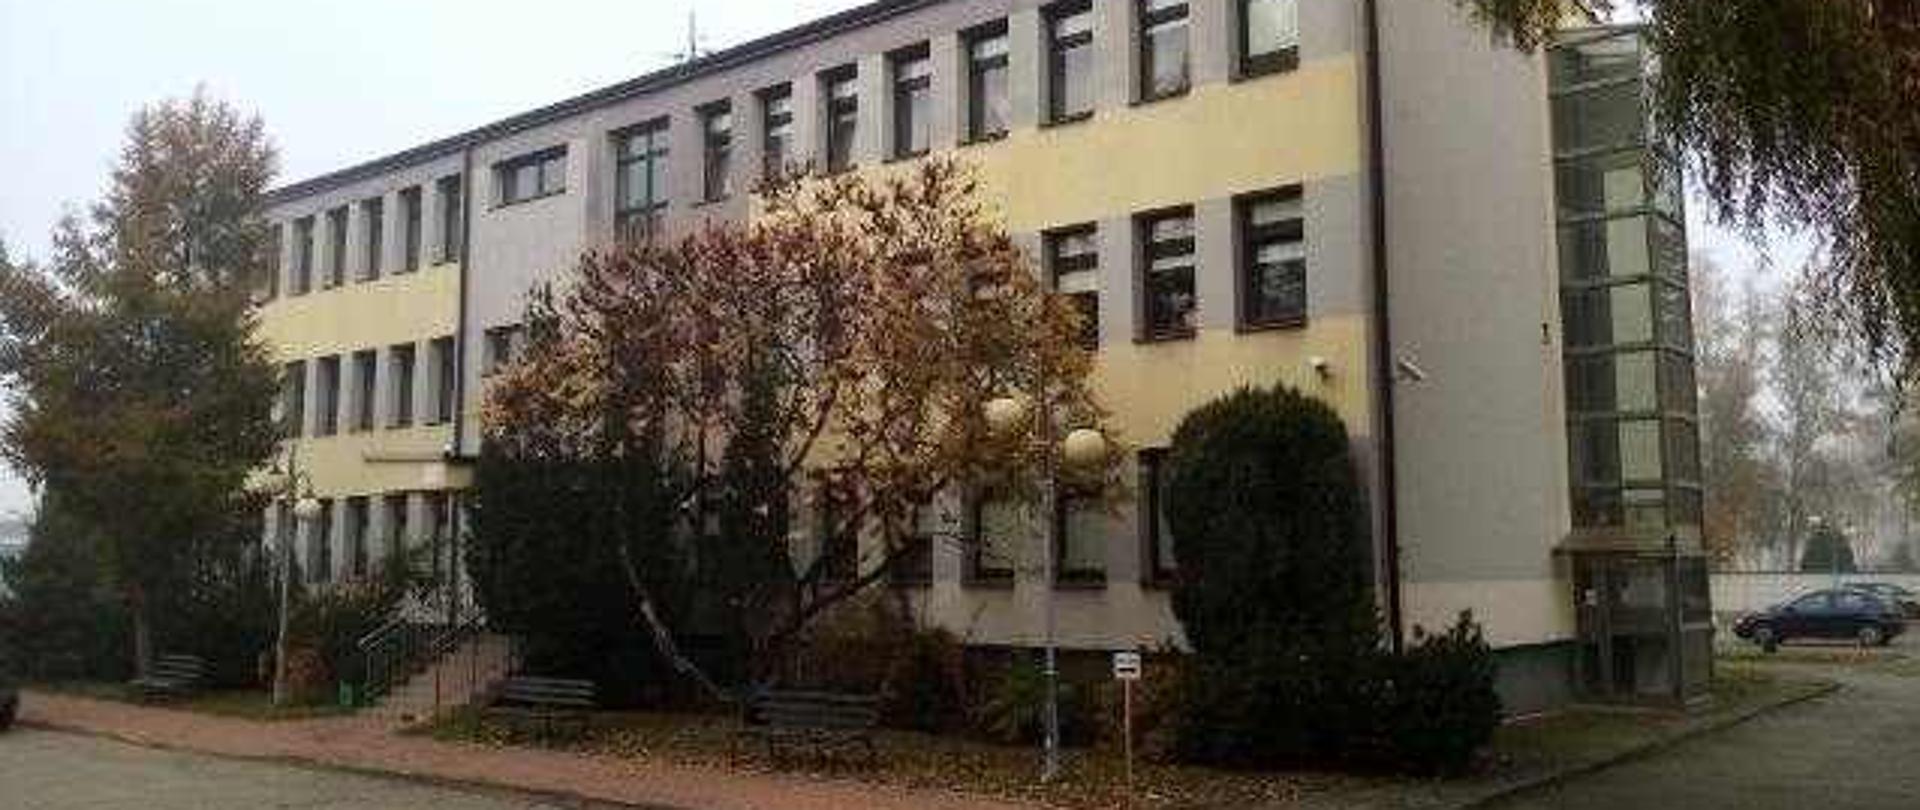 Zdjęcie budynku Prokuratury Rejonowej w Wieluniu